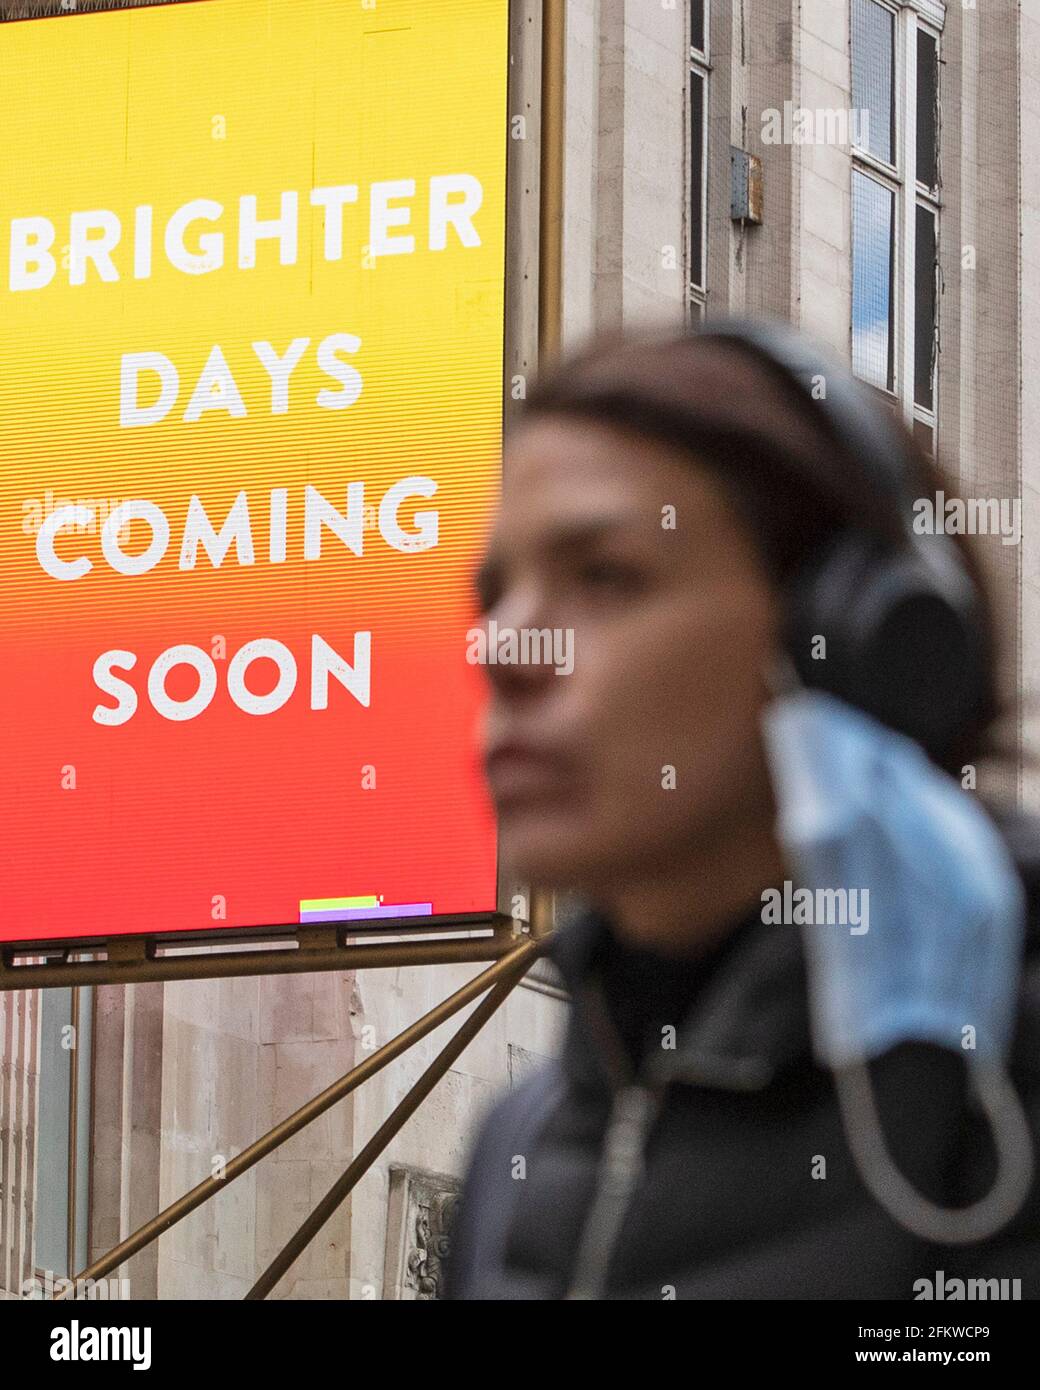 Auf der Tottenham Court Road, London, ist ein Theaterschild mit der Aufschrift „Brighter Days Coming Soon“ zu sehen, da die britische Bevölkerung nach Covid beginnt, ihre Freiheiten wiederzuerlangen Stockfoto